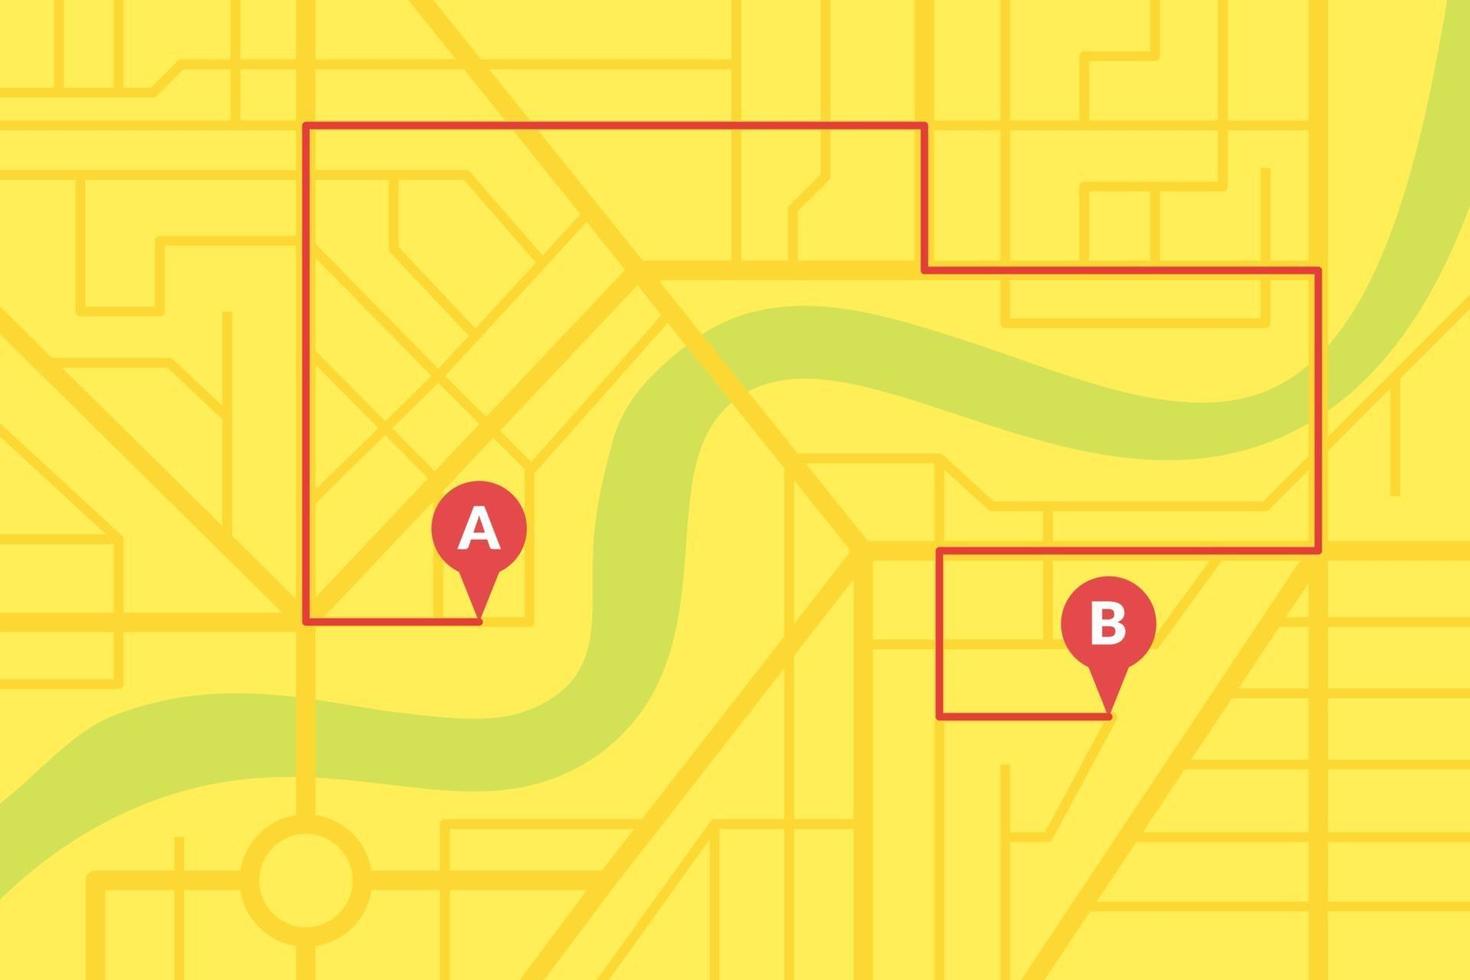 Plano de mapa de calles de la ciudad con pines gps y rutas de navegación desde marcadores de puntos a a b. esquema de ilustración de eps de color amarillo vectorial vector